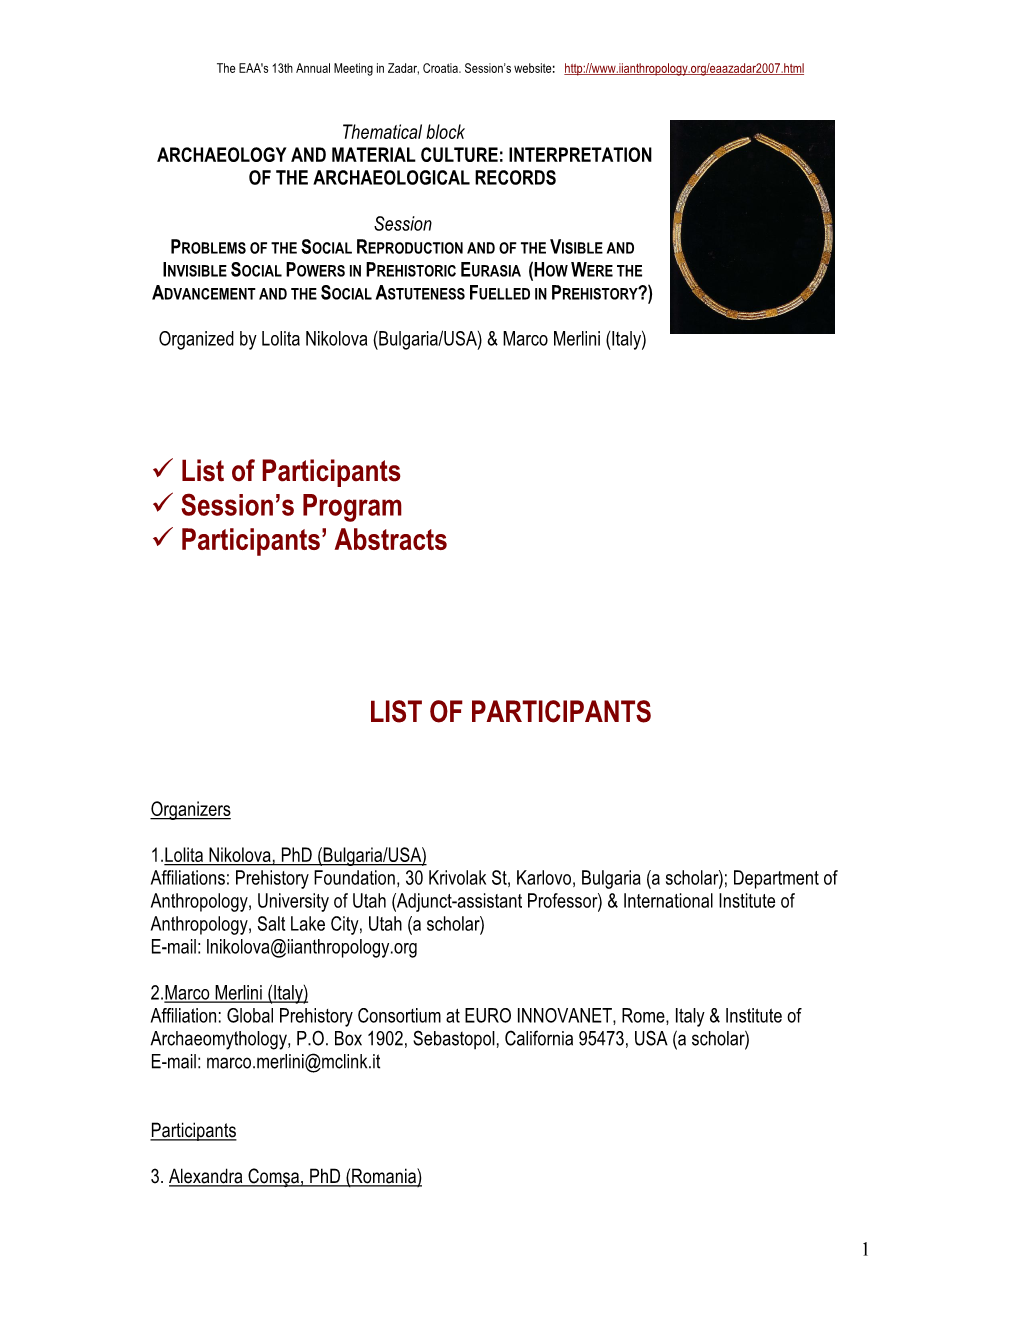 List of Participants Session's Program Participants